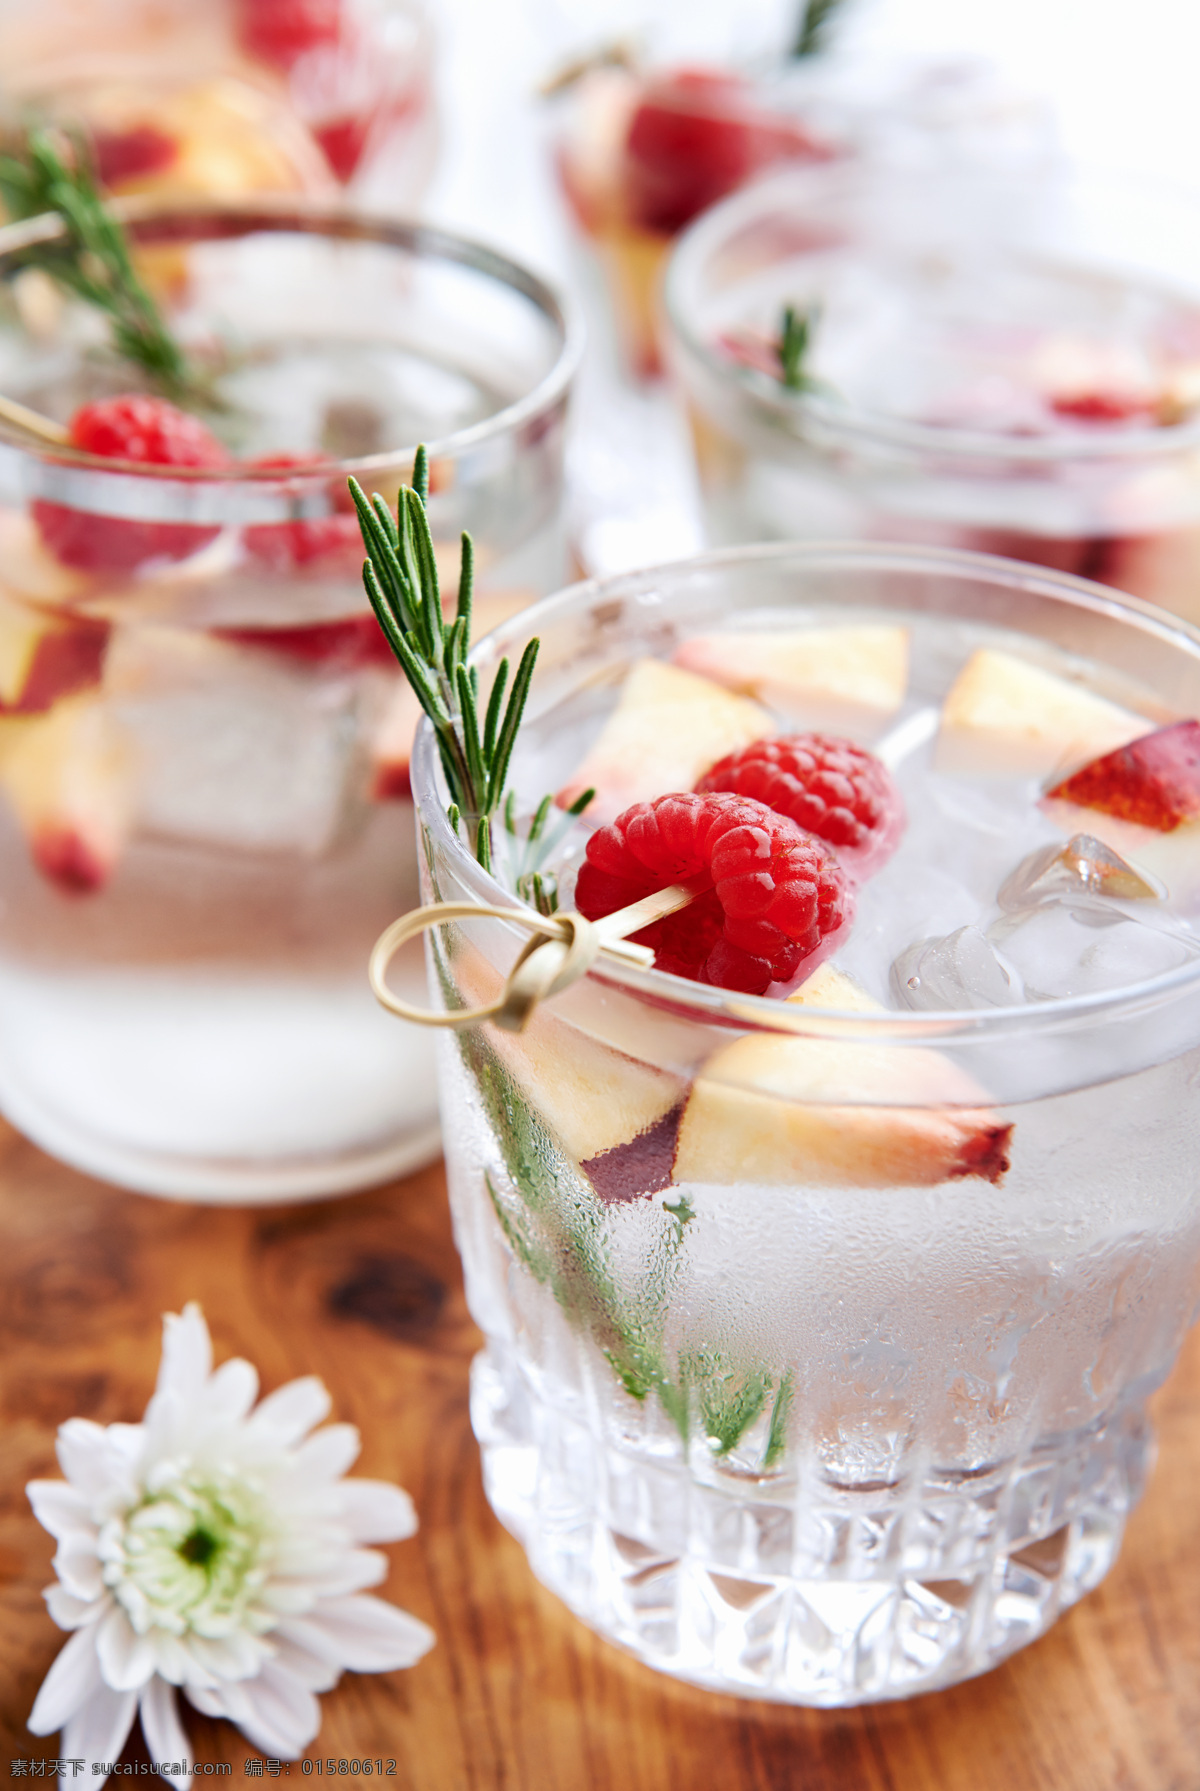 冰水 里 树莓 桌子 花朵 水果 冰块 饮料 玻璃杯 酒类图片 餐饮美食